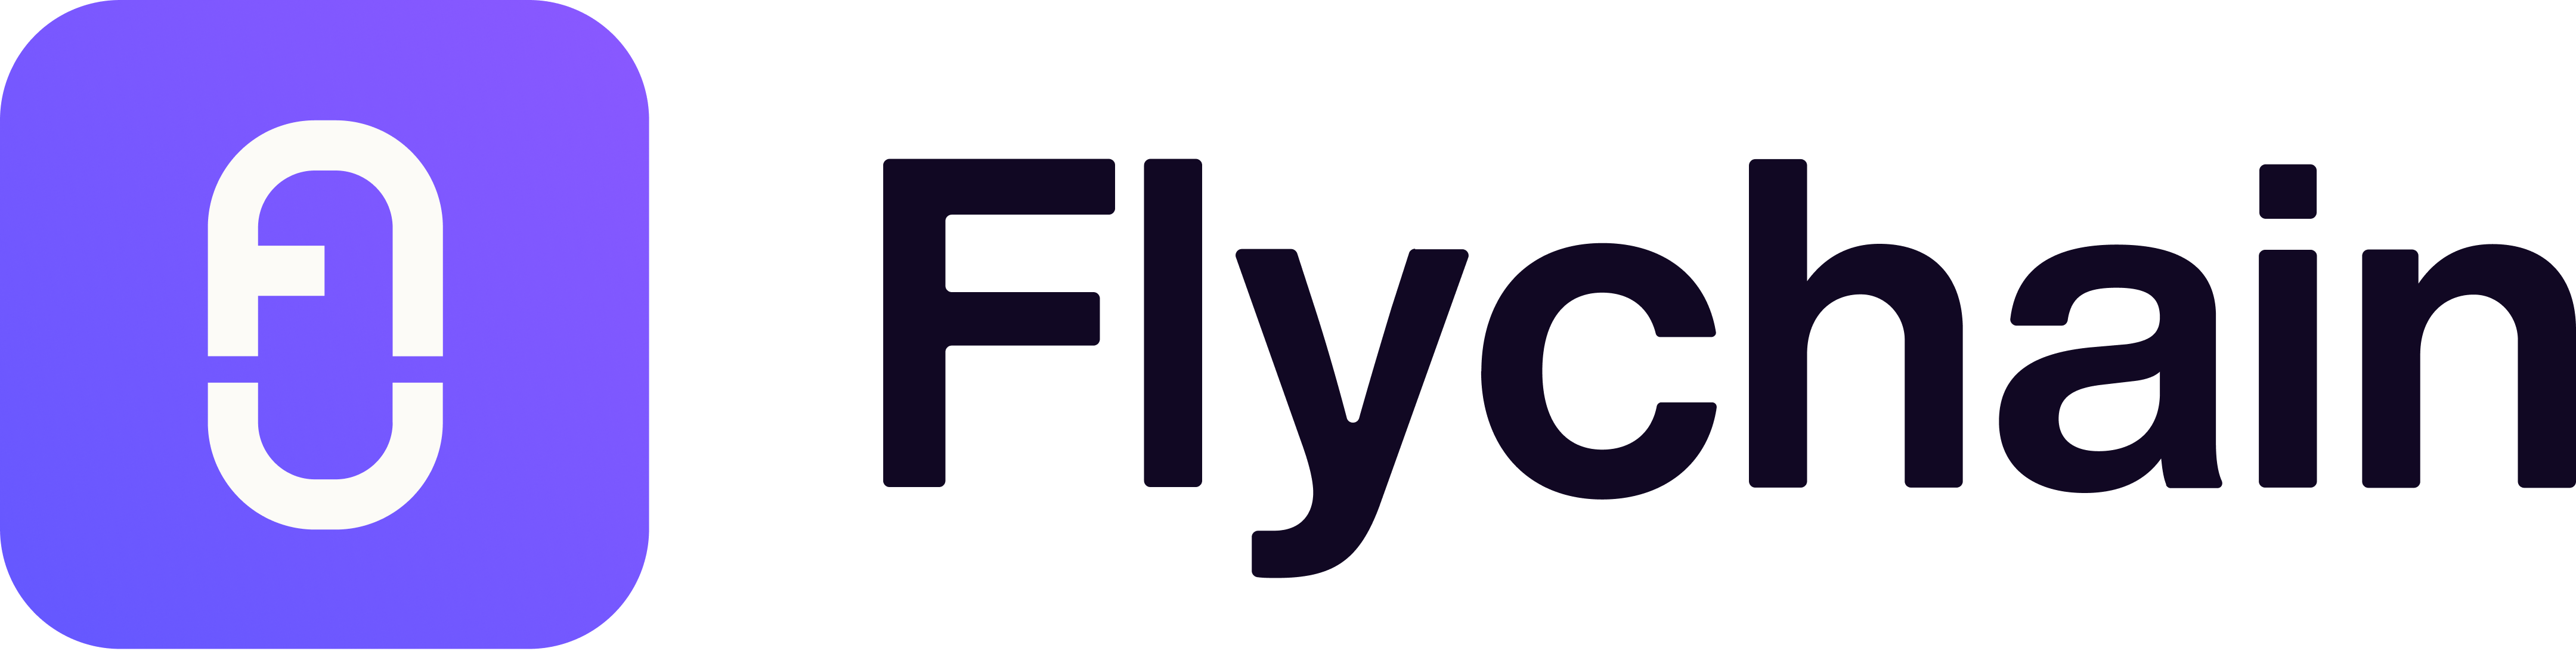 Flychain